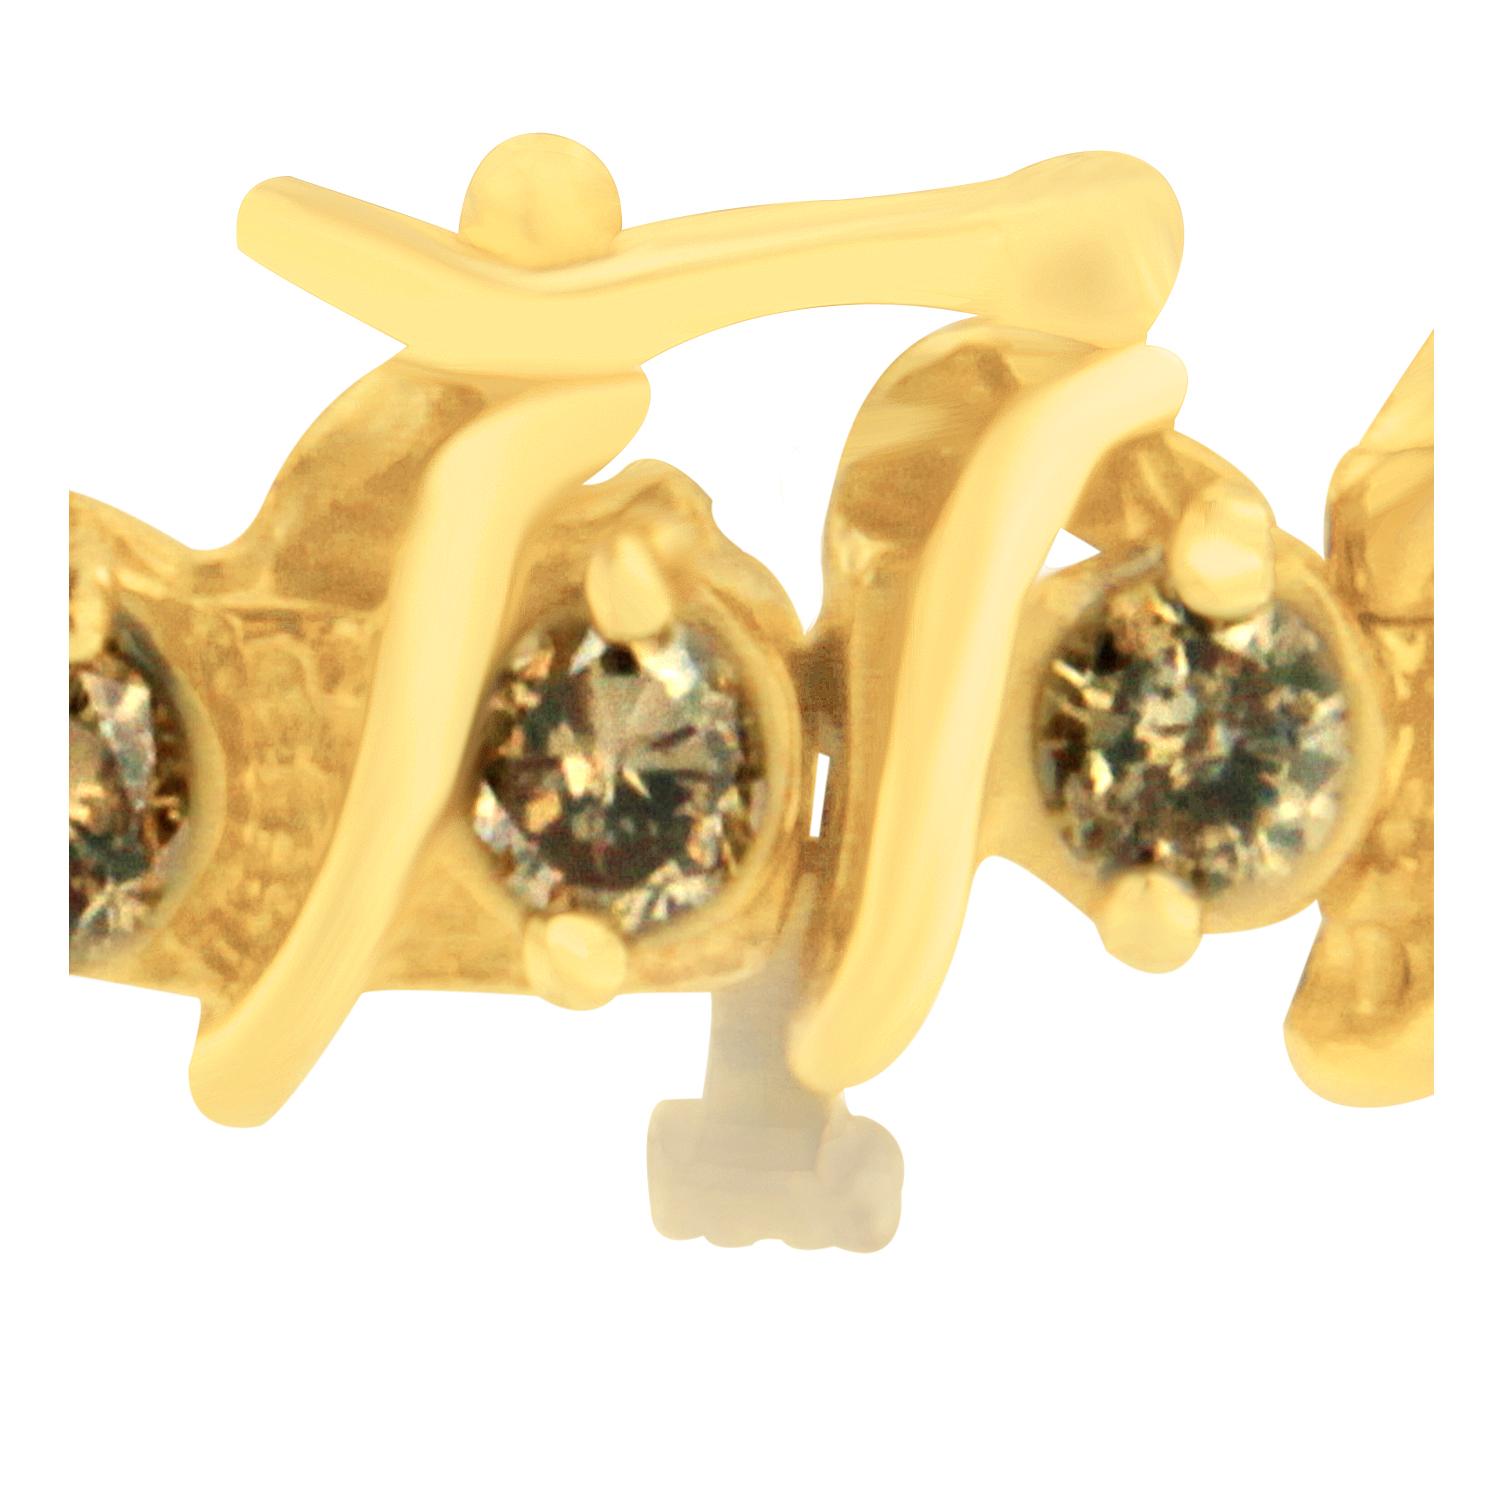 Voici un cadeau qui ne manque pas d'éclat ! Chaque diamant Champagne unique de ce superbe bracelet de six carats est relié par des maillons en or jaune en relief, créant une forme en 